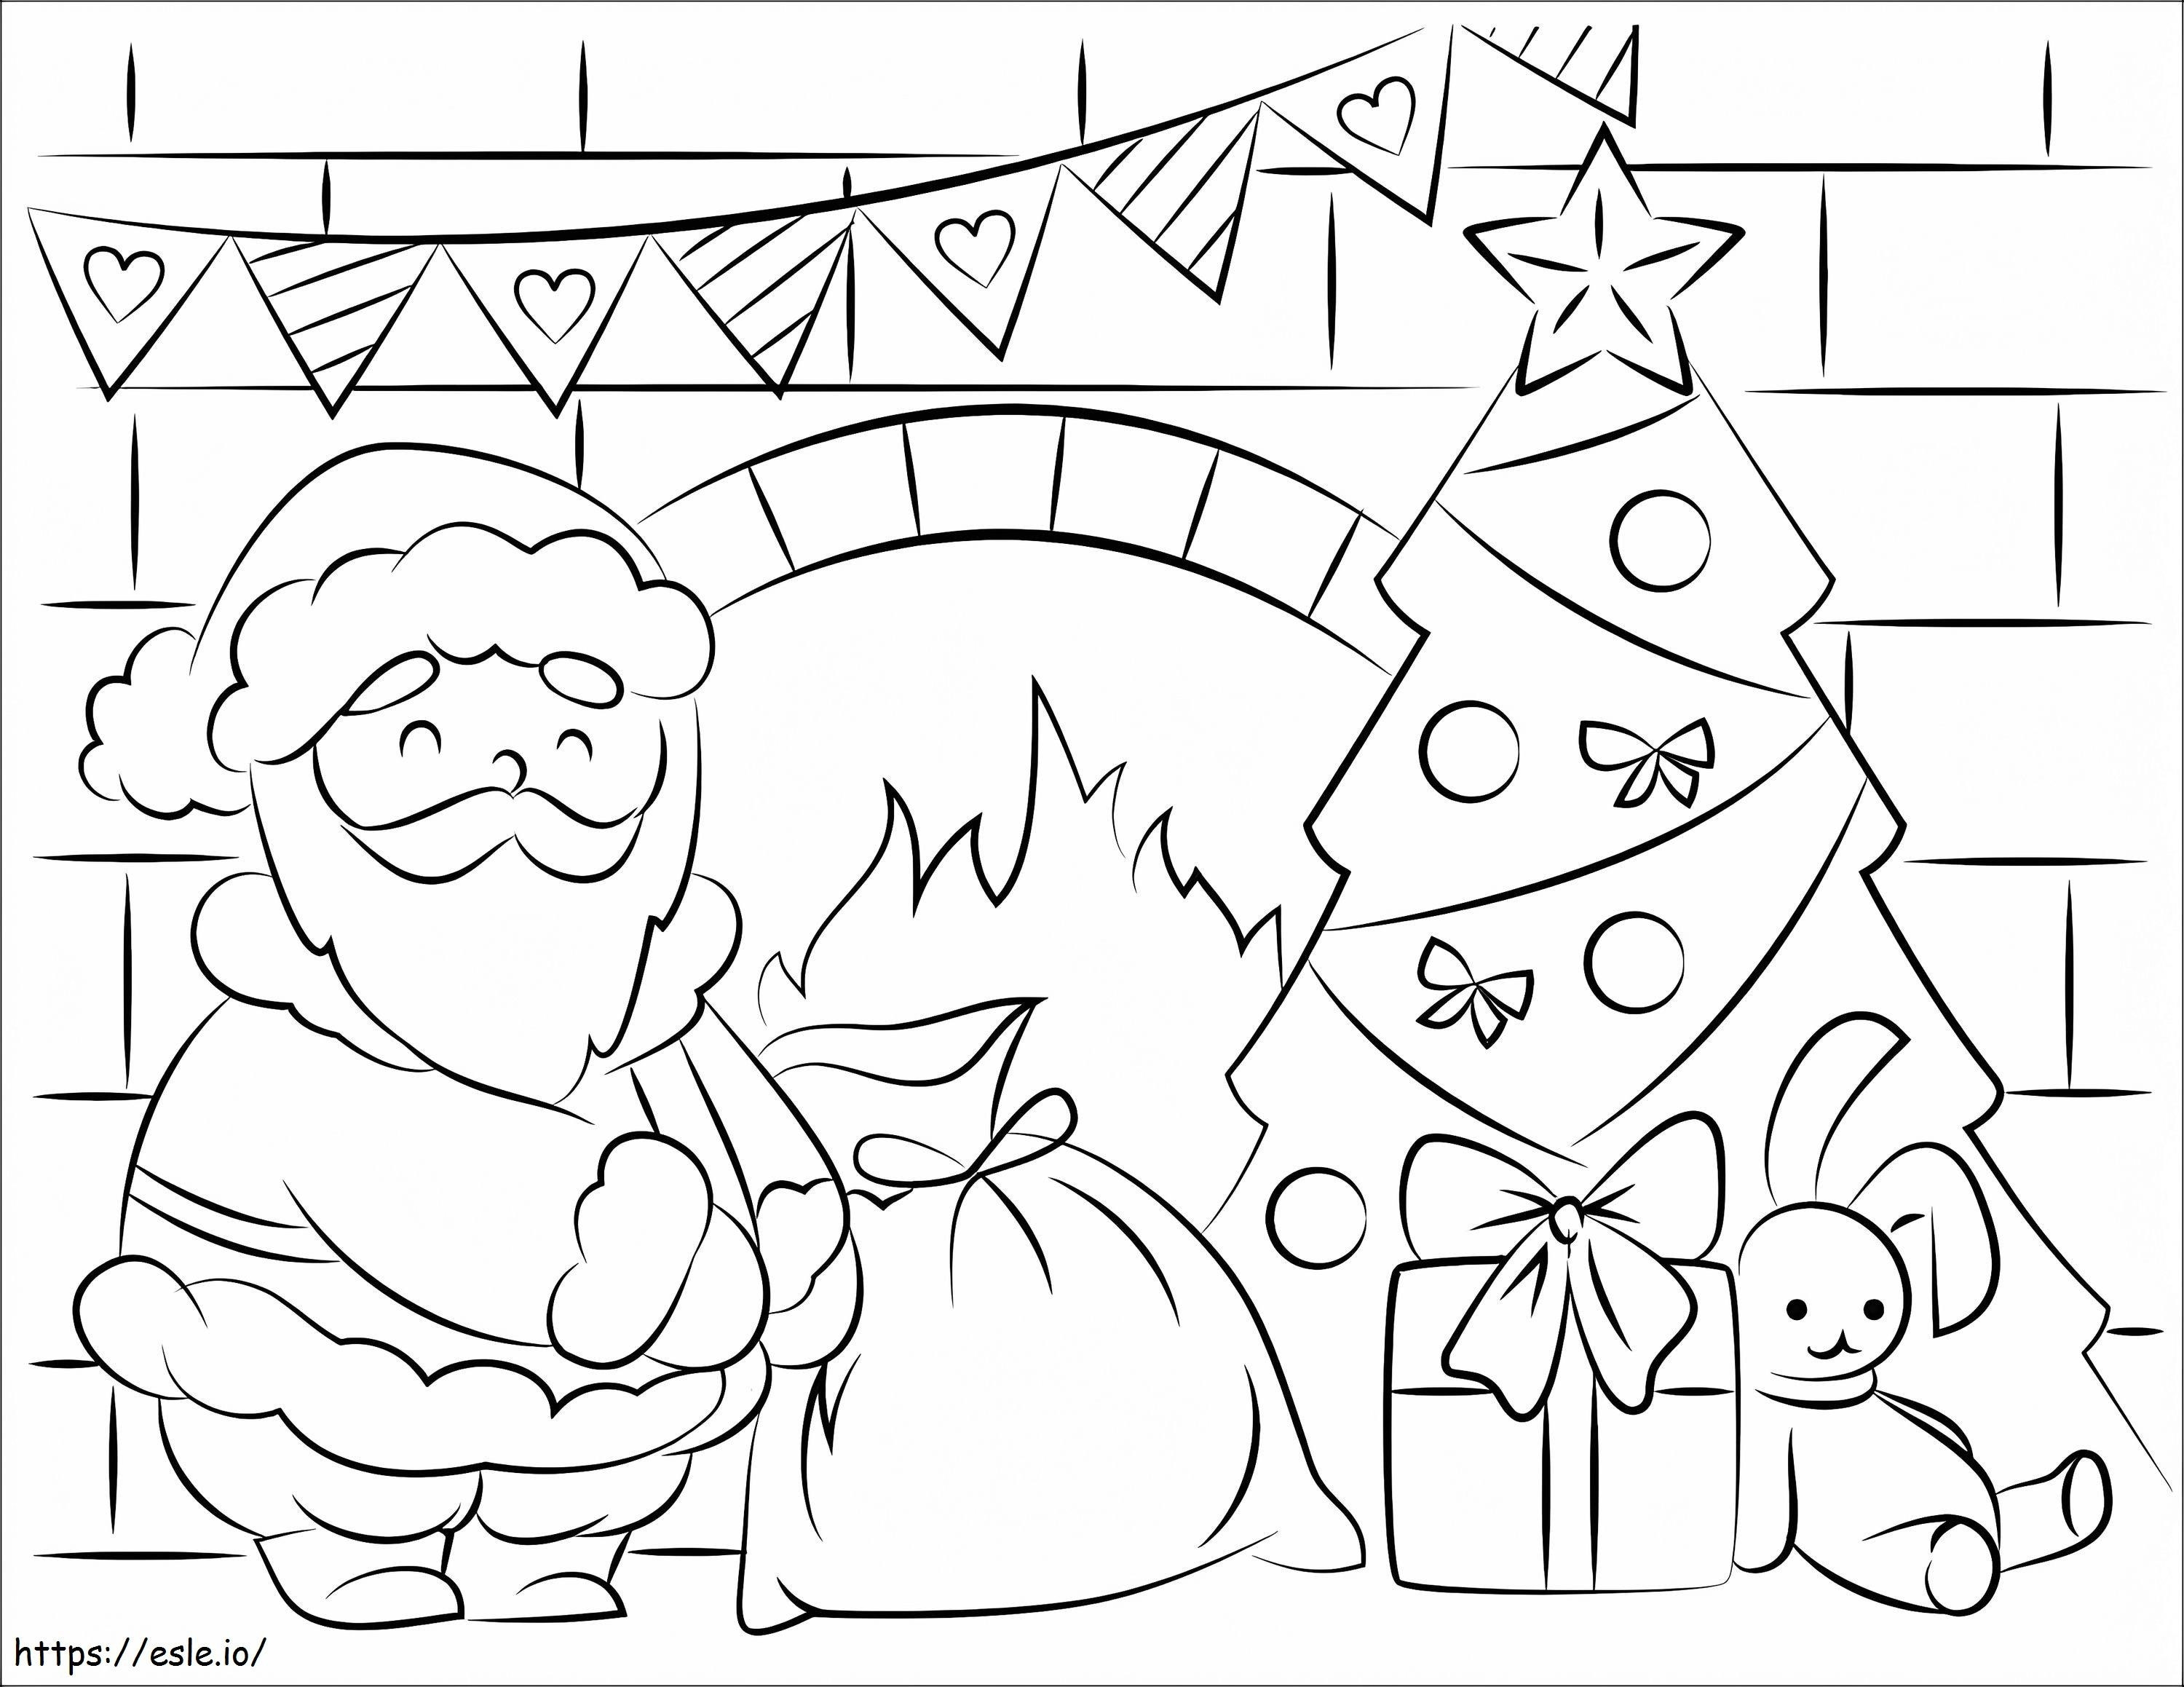 Santa Claus 3 coloring page